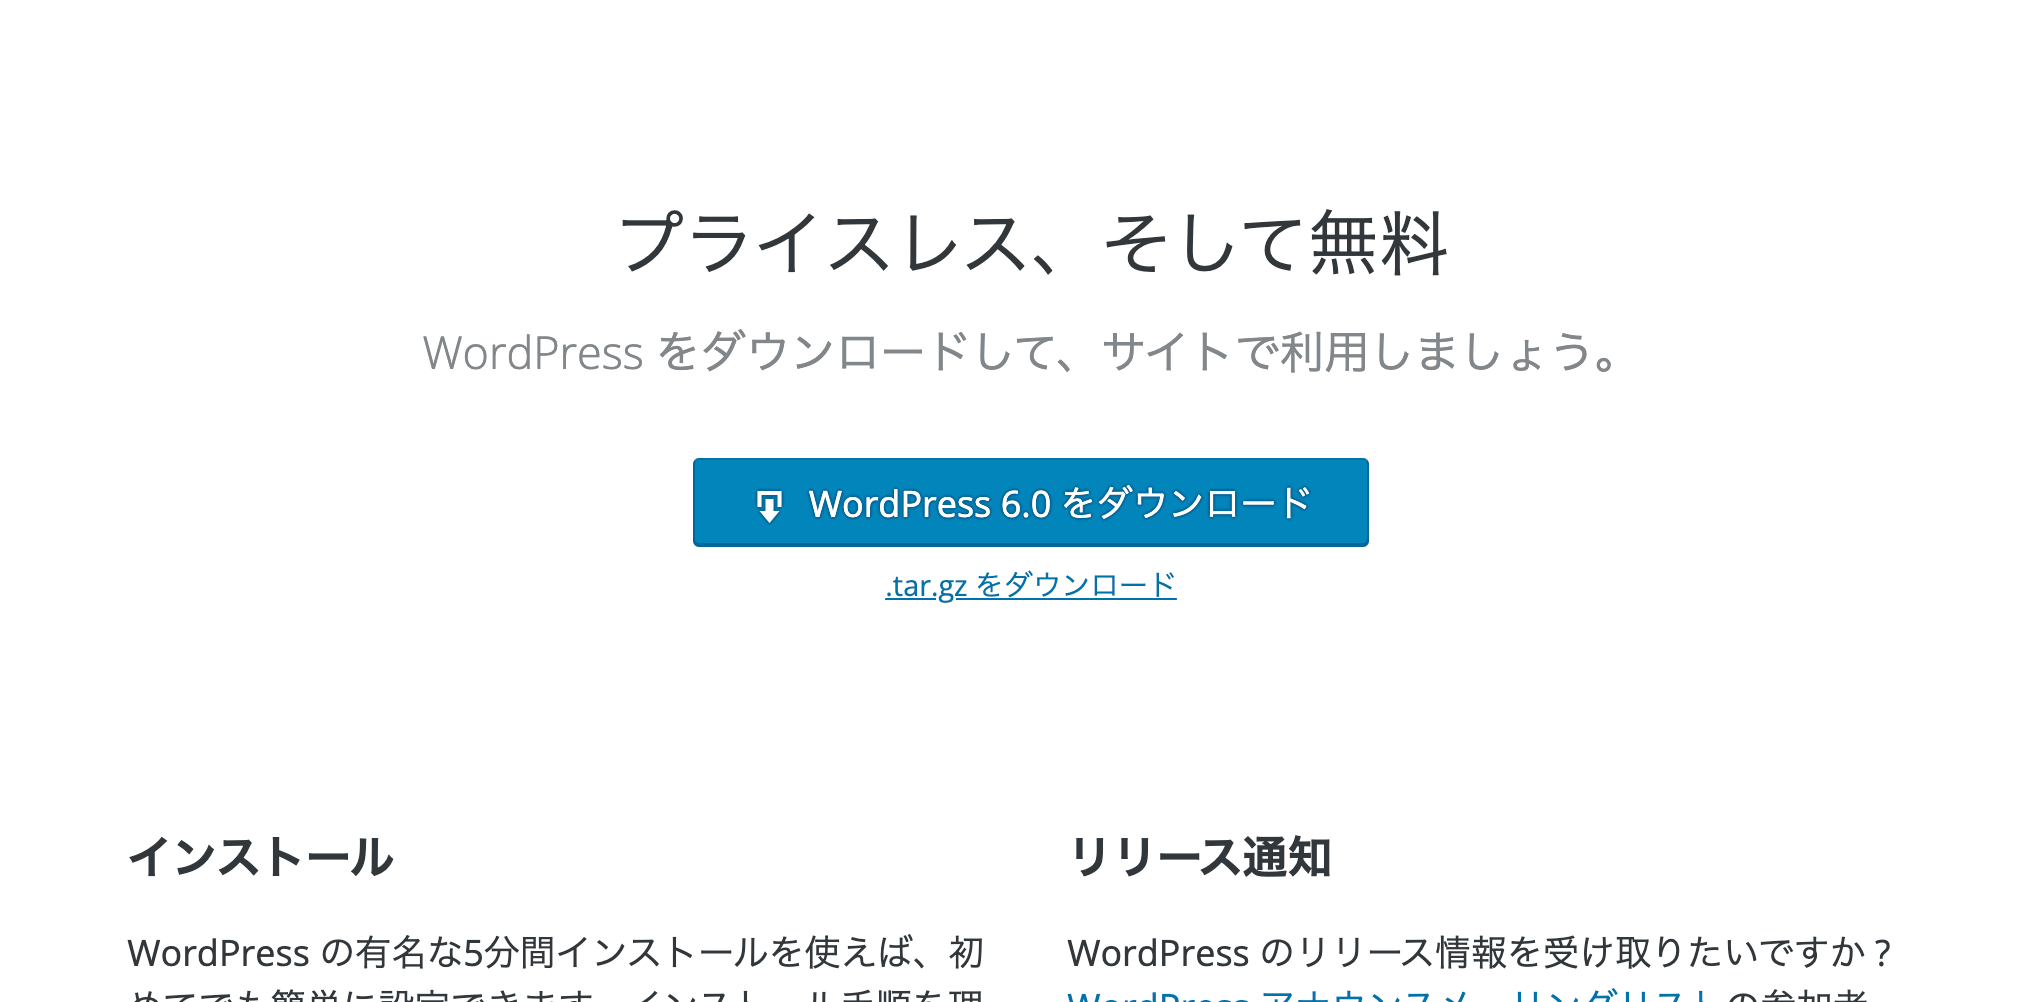 5ステップでできる！Wordpressのローカル環境構築 Wordpressを公式サイトからダウンロード